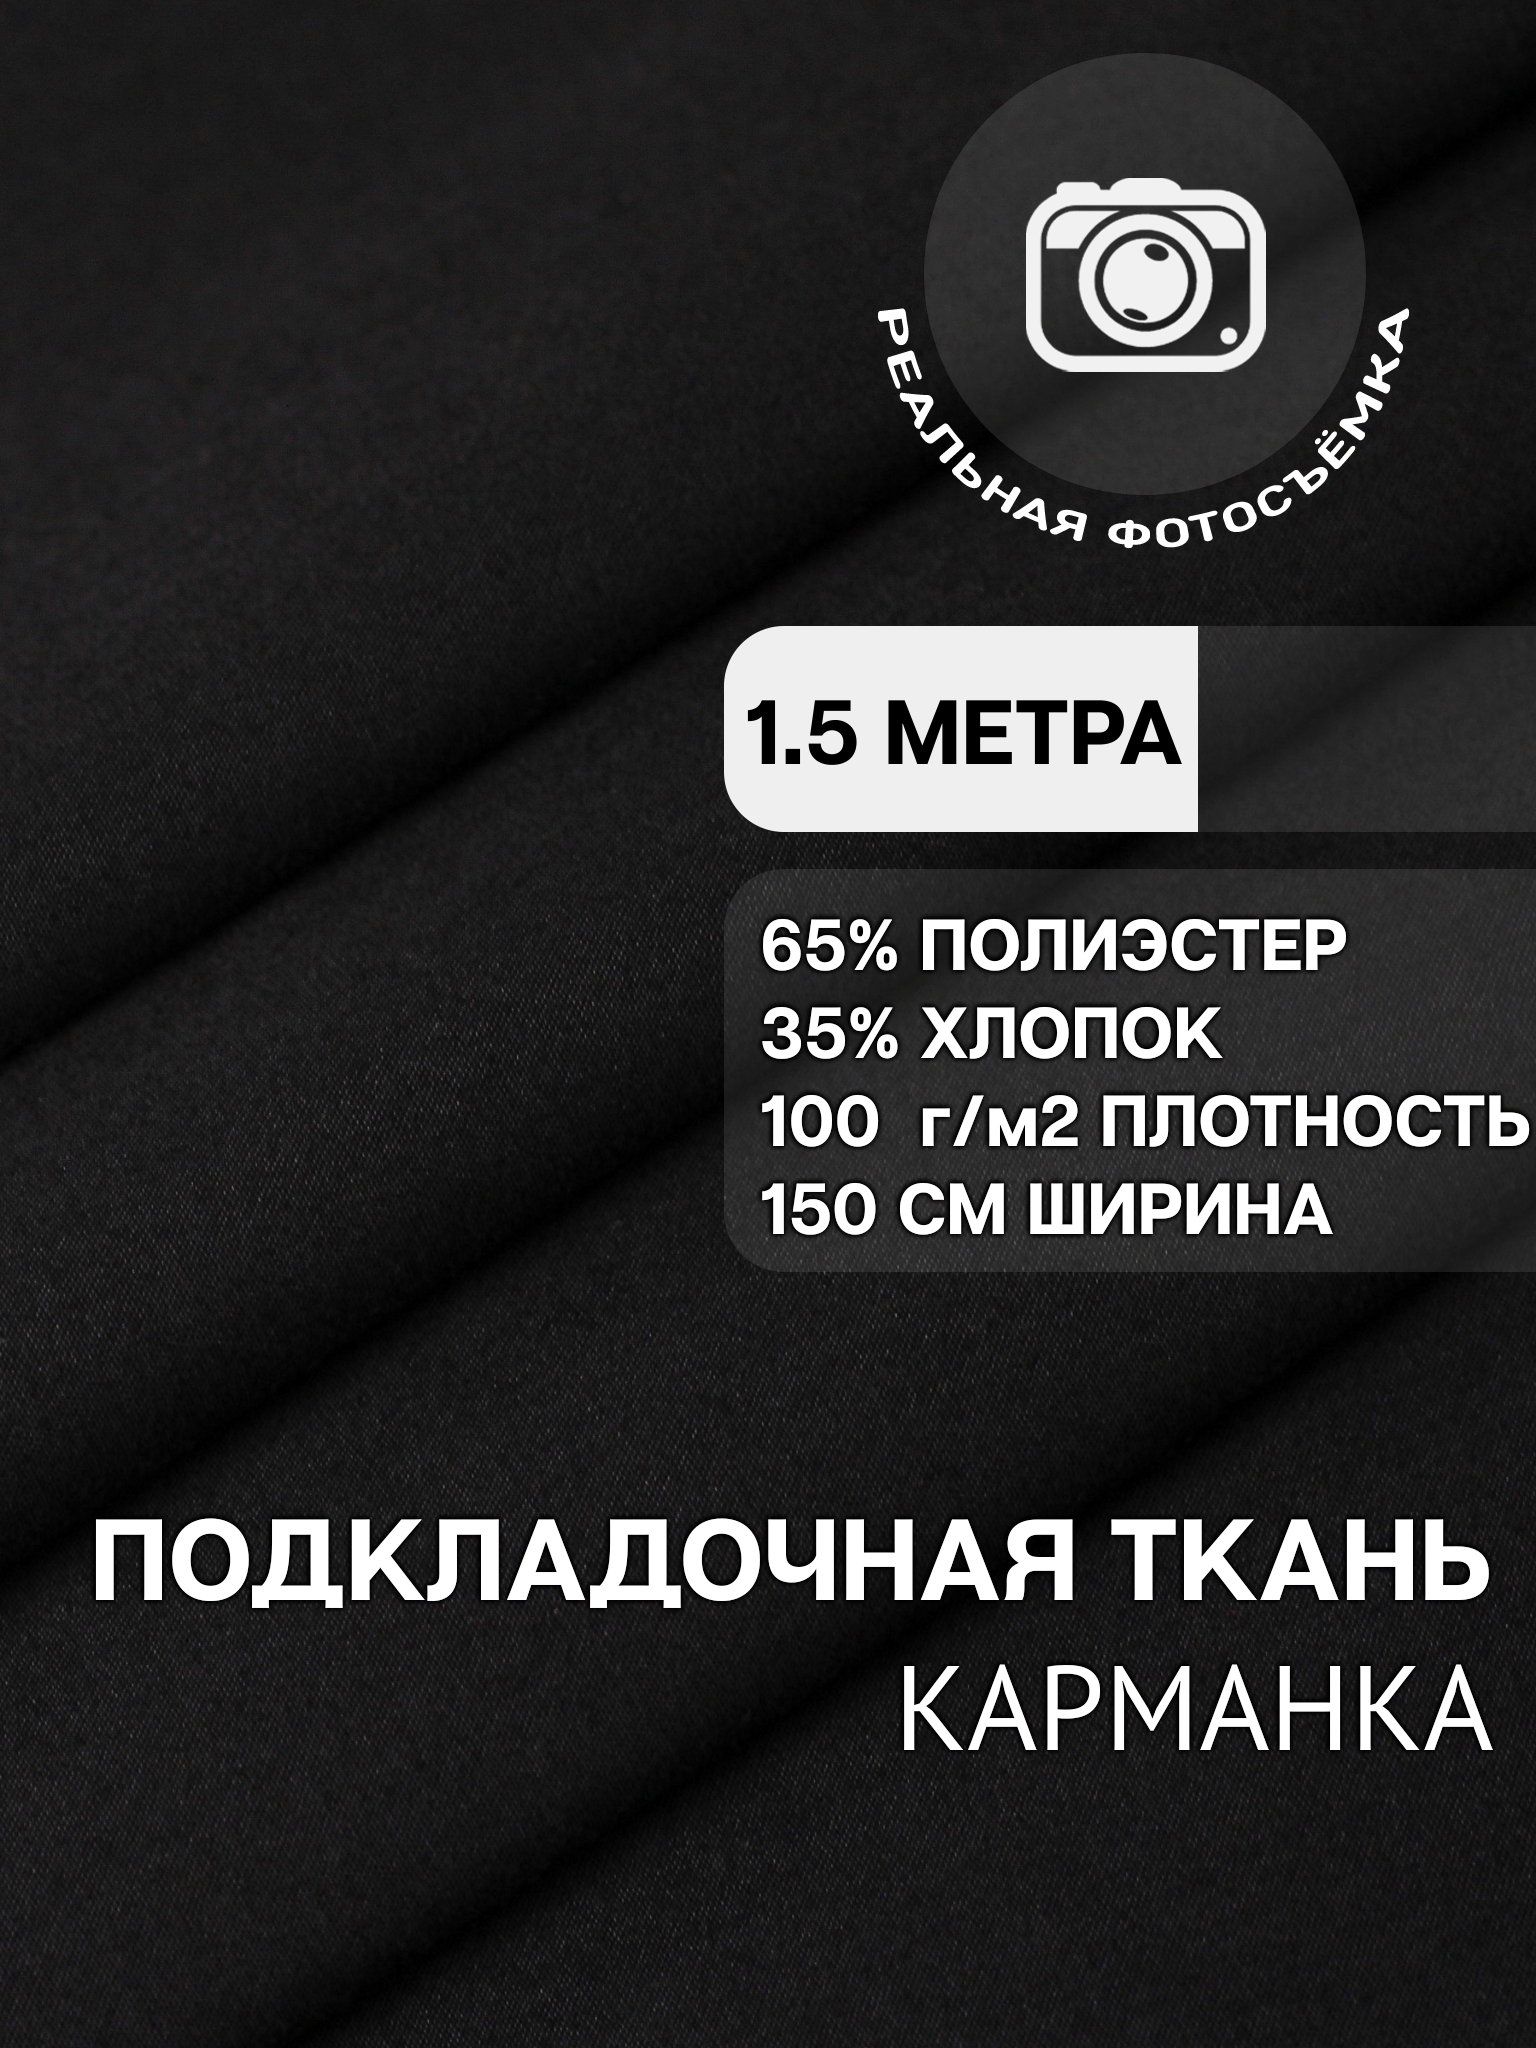 Ткань карманная подкладочная черная для шитья, однотонная MDC FABRICS KX100/4 для одежды. Хлопок 35%. Отрез 1.5 метра